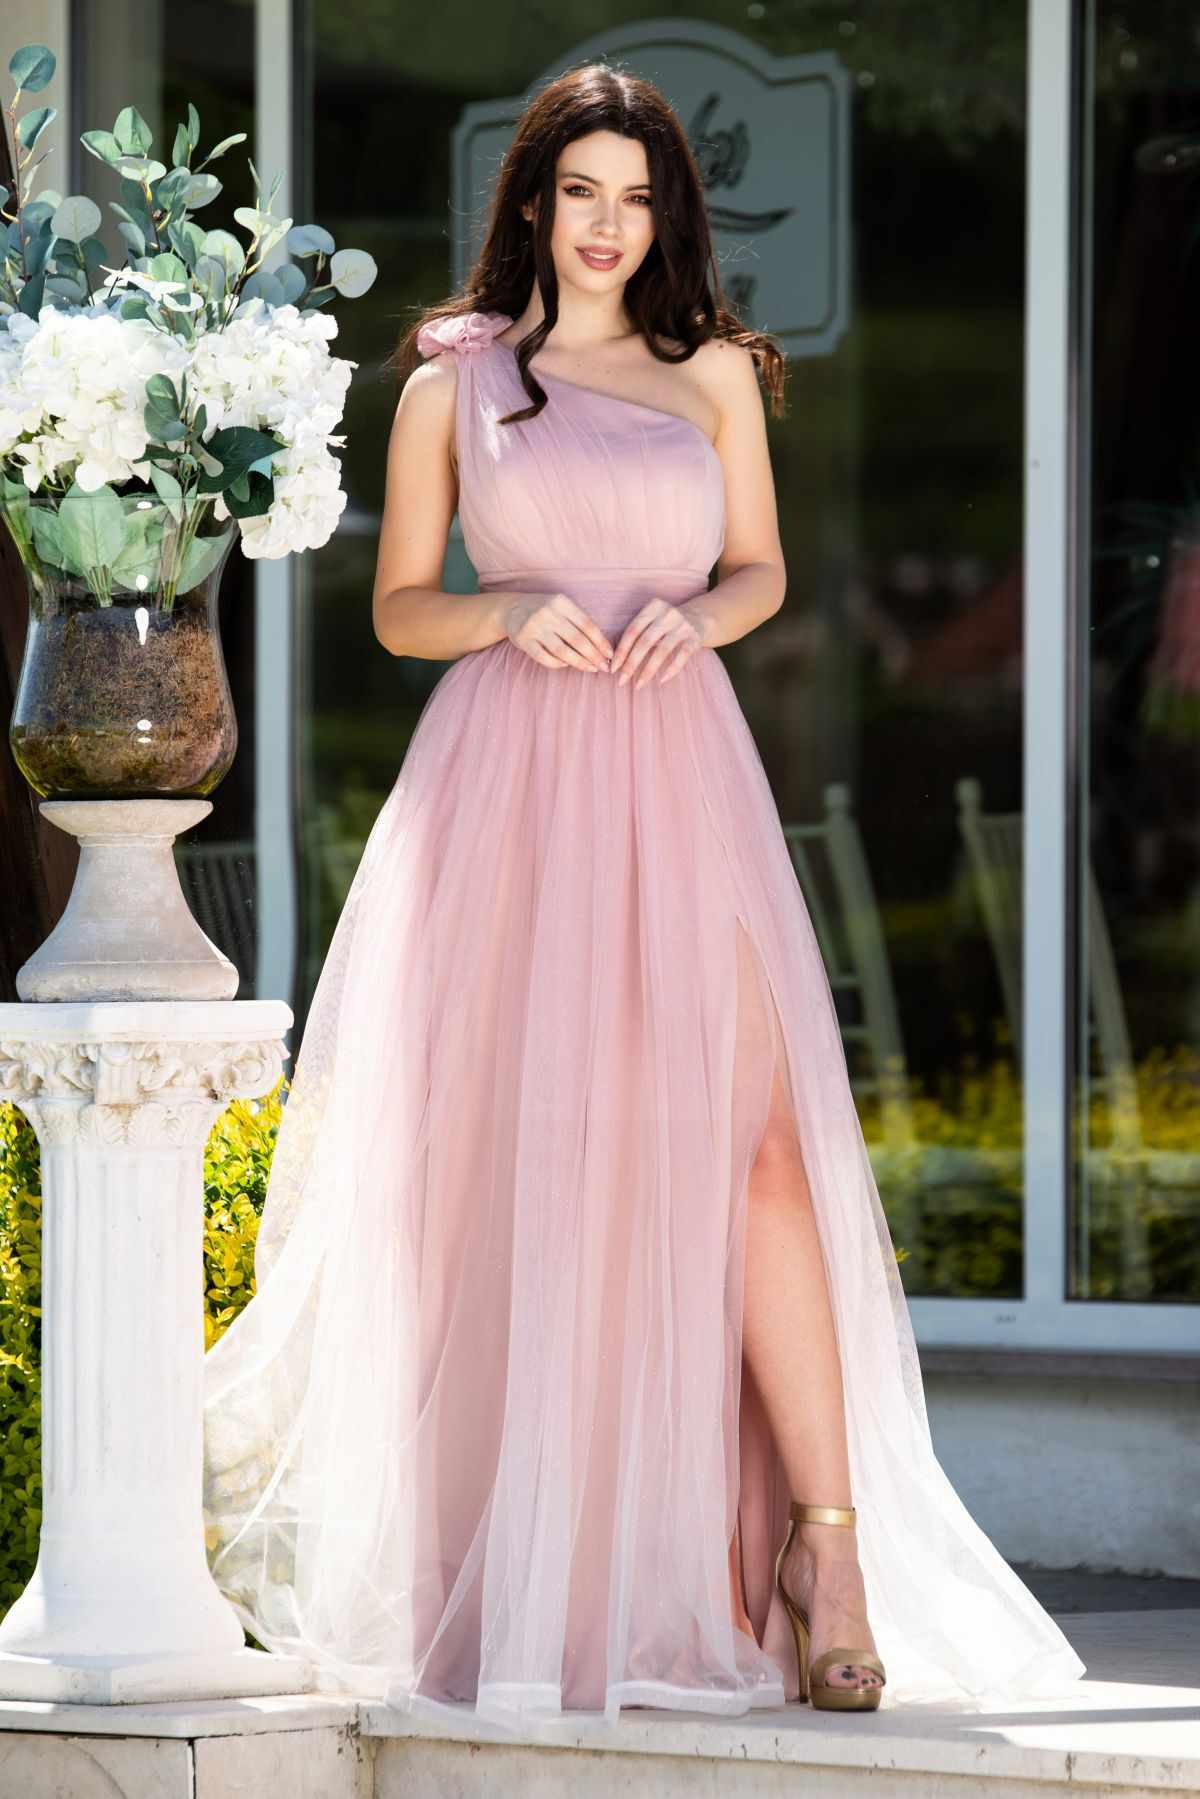 Rochie de seara Kendra lunga rose in degrade eleganta din tulle cu floare 3D